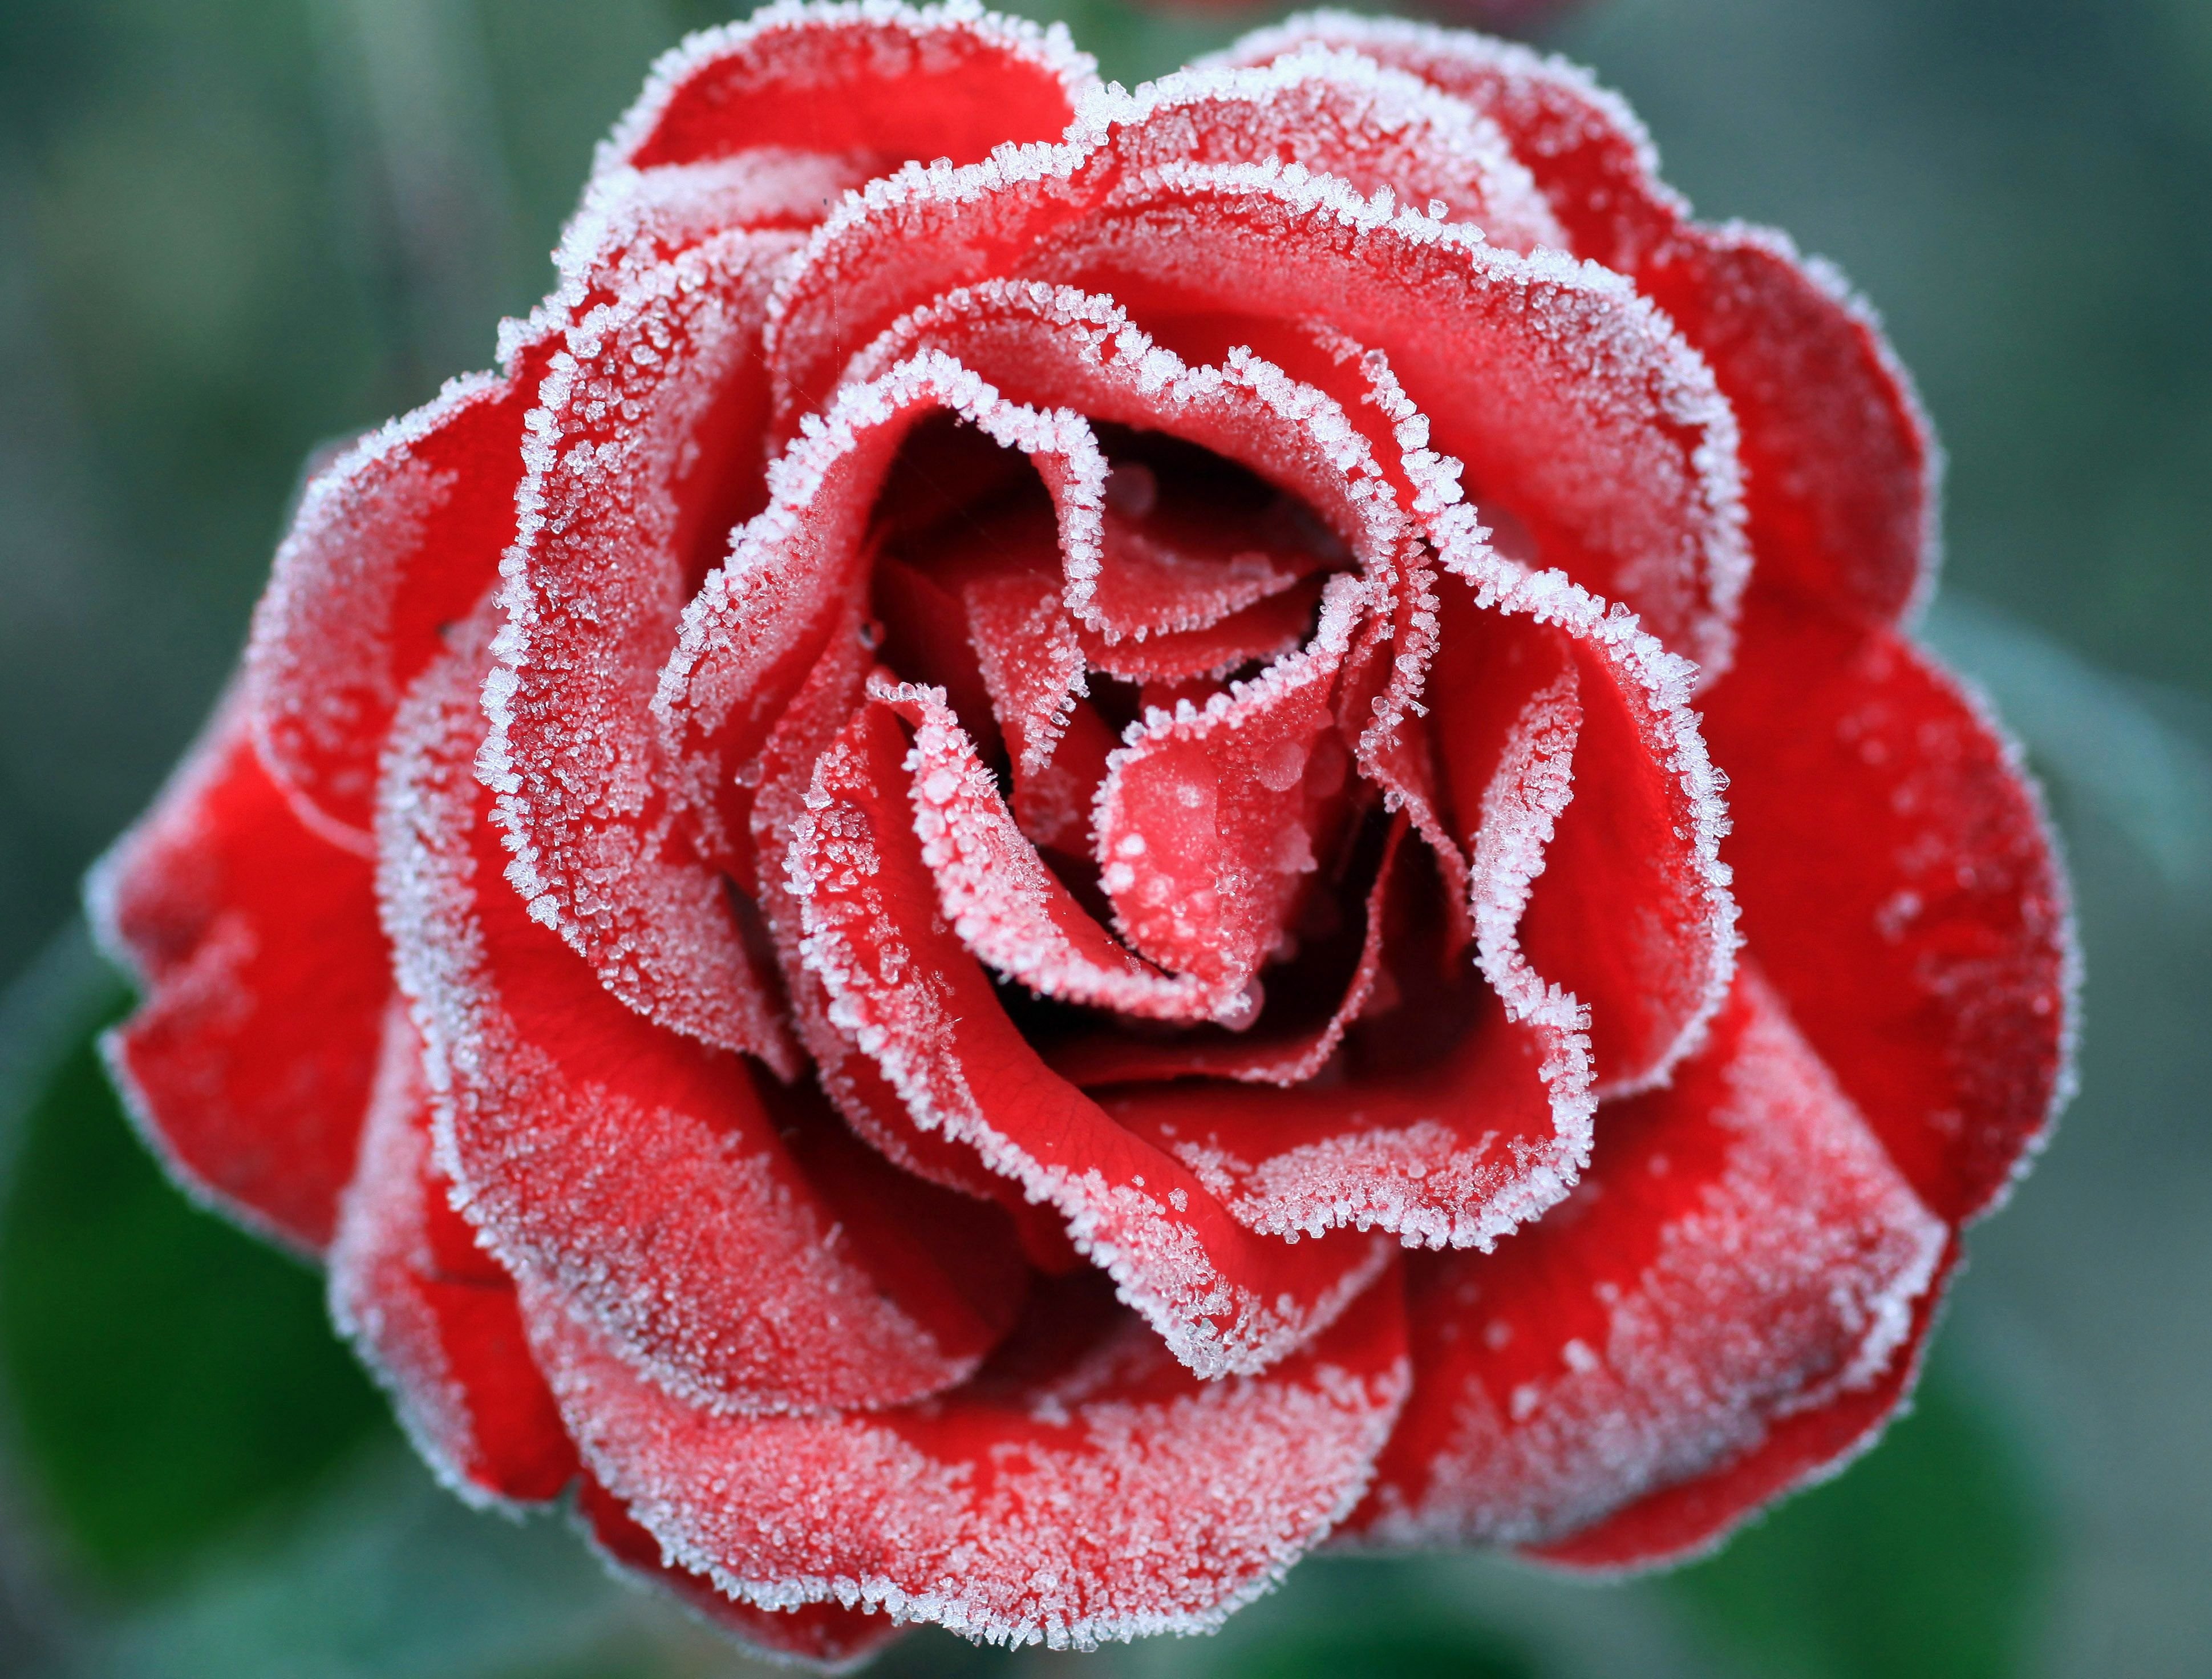 Indiah rose